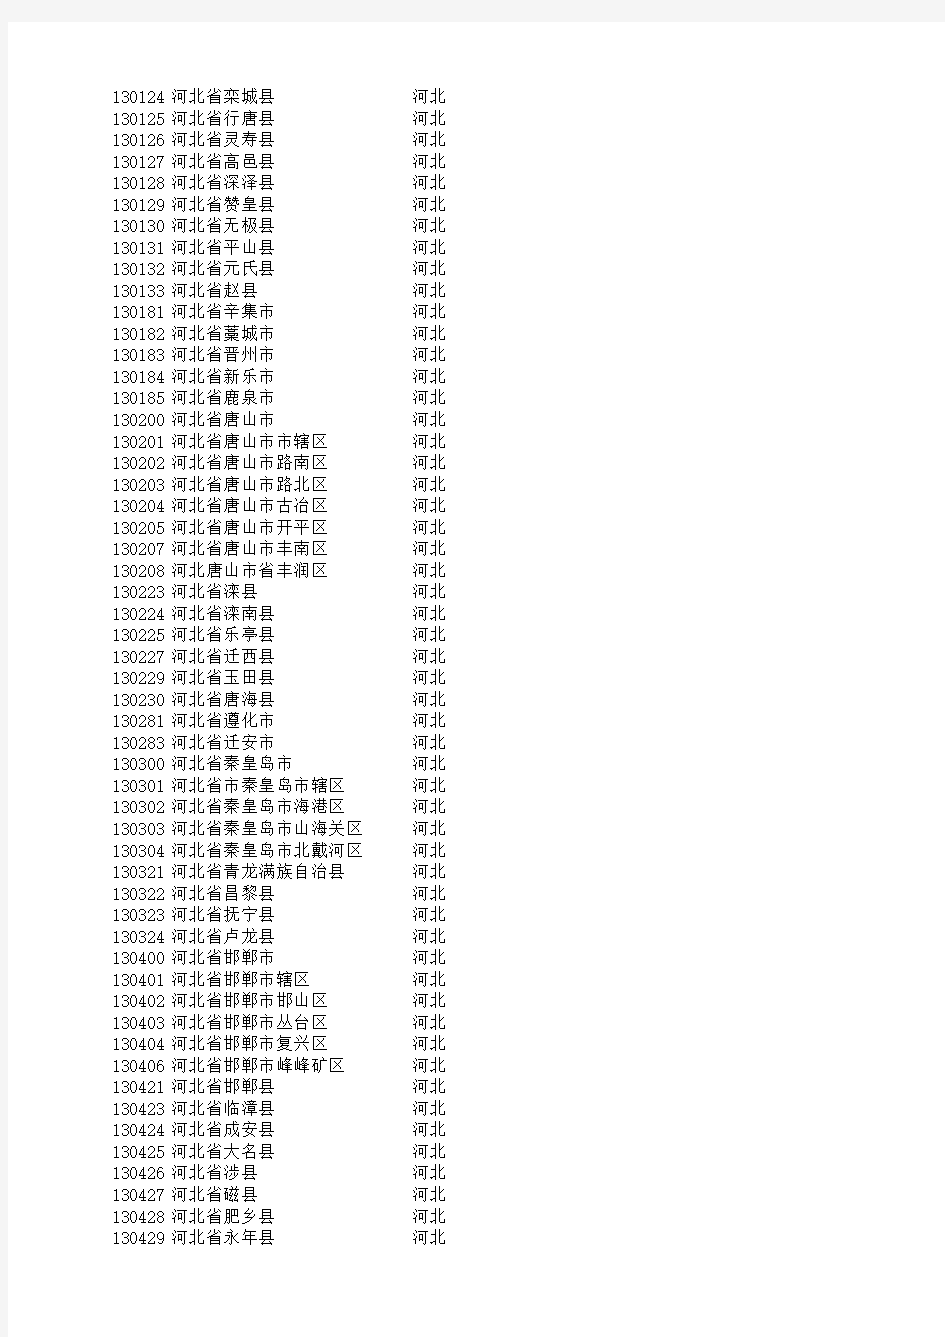 最新中国各省行政区划代码表